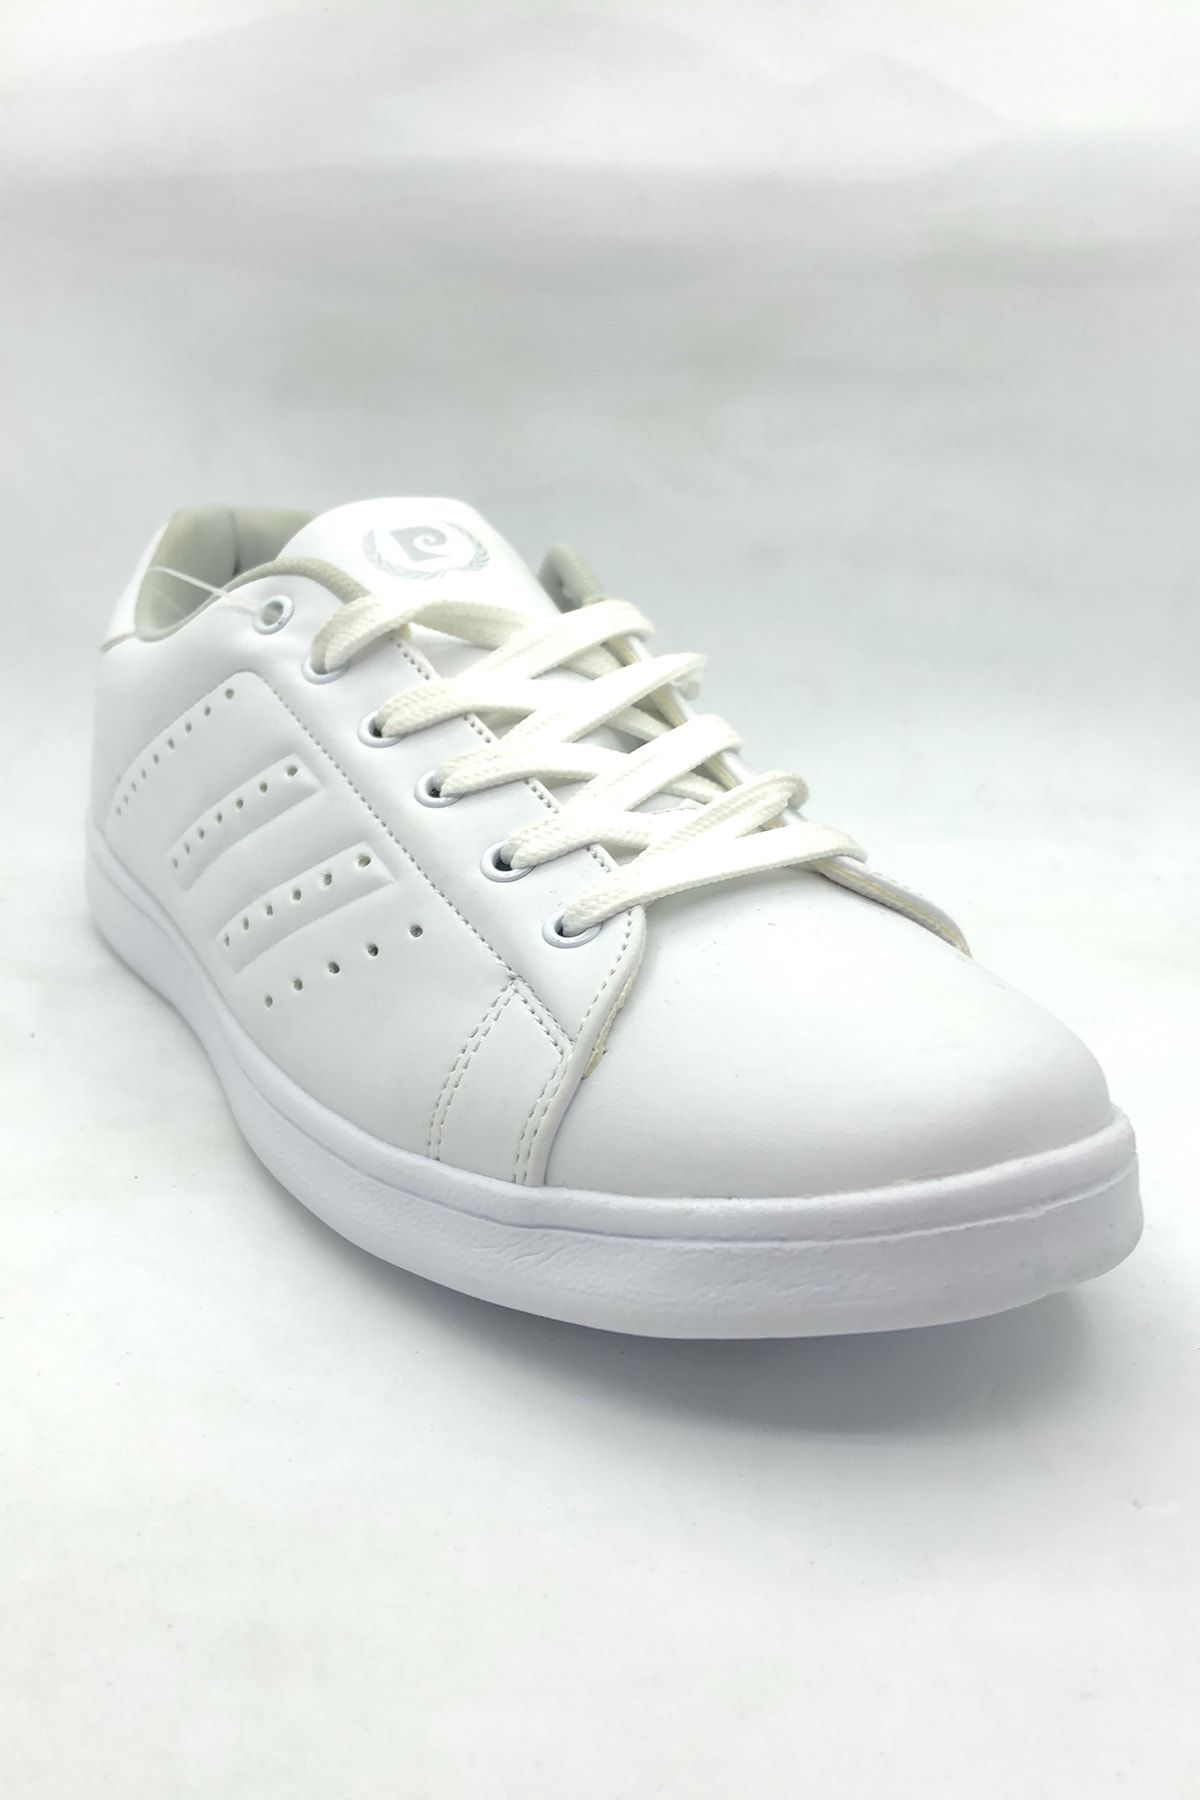 Pierre Cardin Erkek Beyaz Platin Spor Ayakkabı-1 Pcs-10152